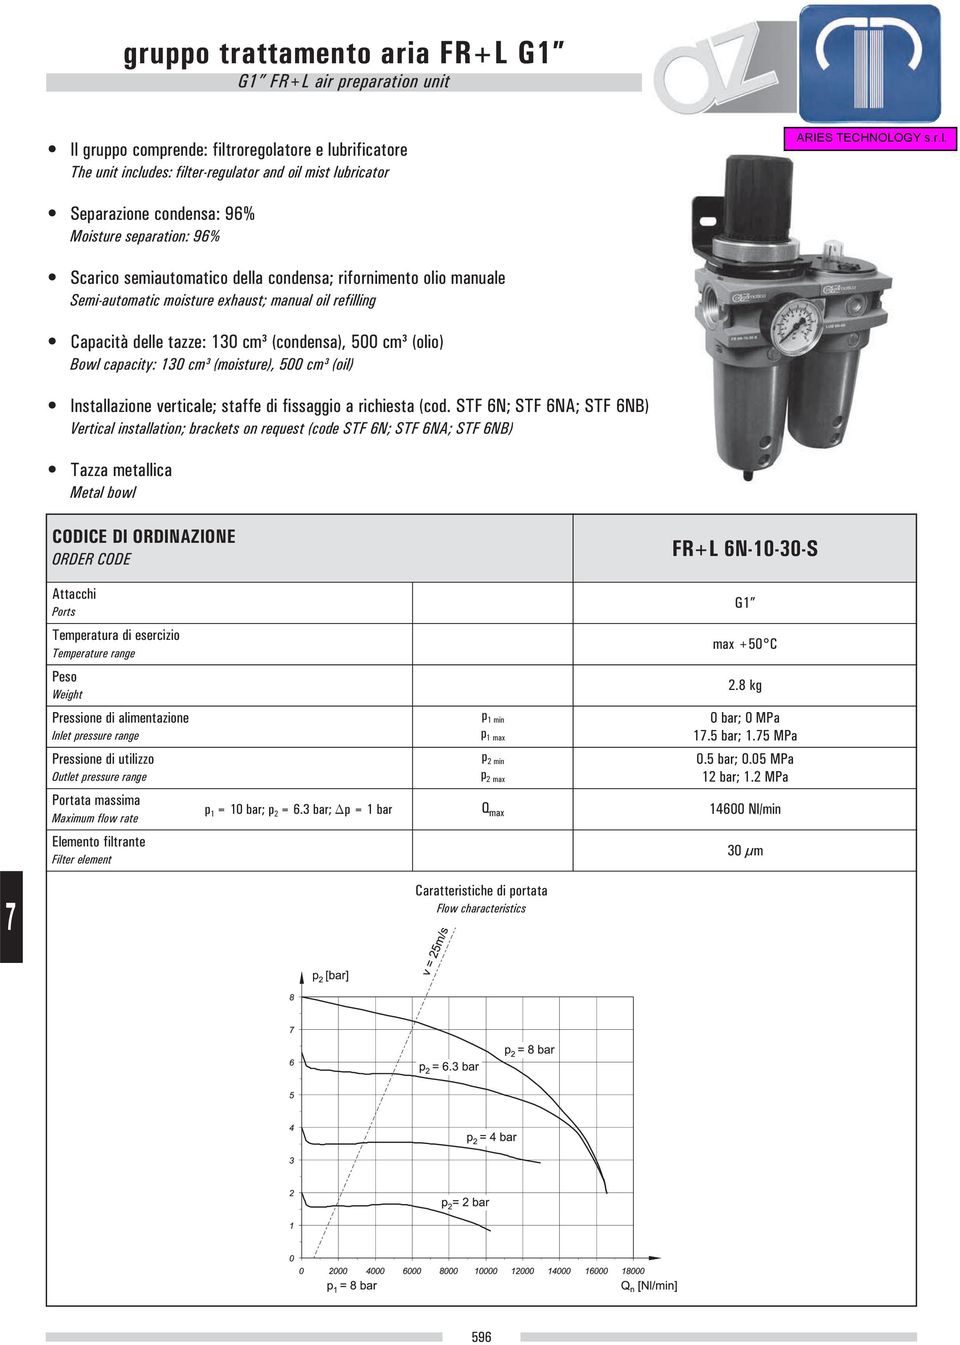 (olio) Bowl capacity: 130 cm³ (moisture), 500 cm³ (oil) Installazione verticale; staffe di fissaggio a richiesta (cod.